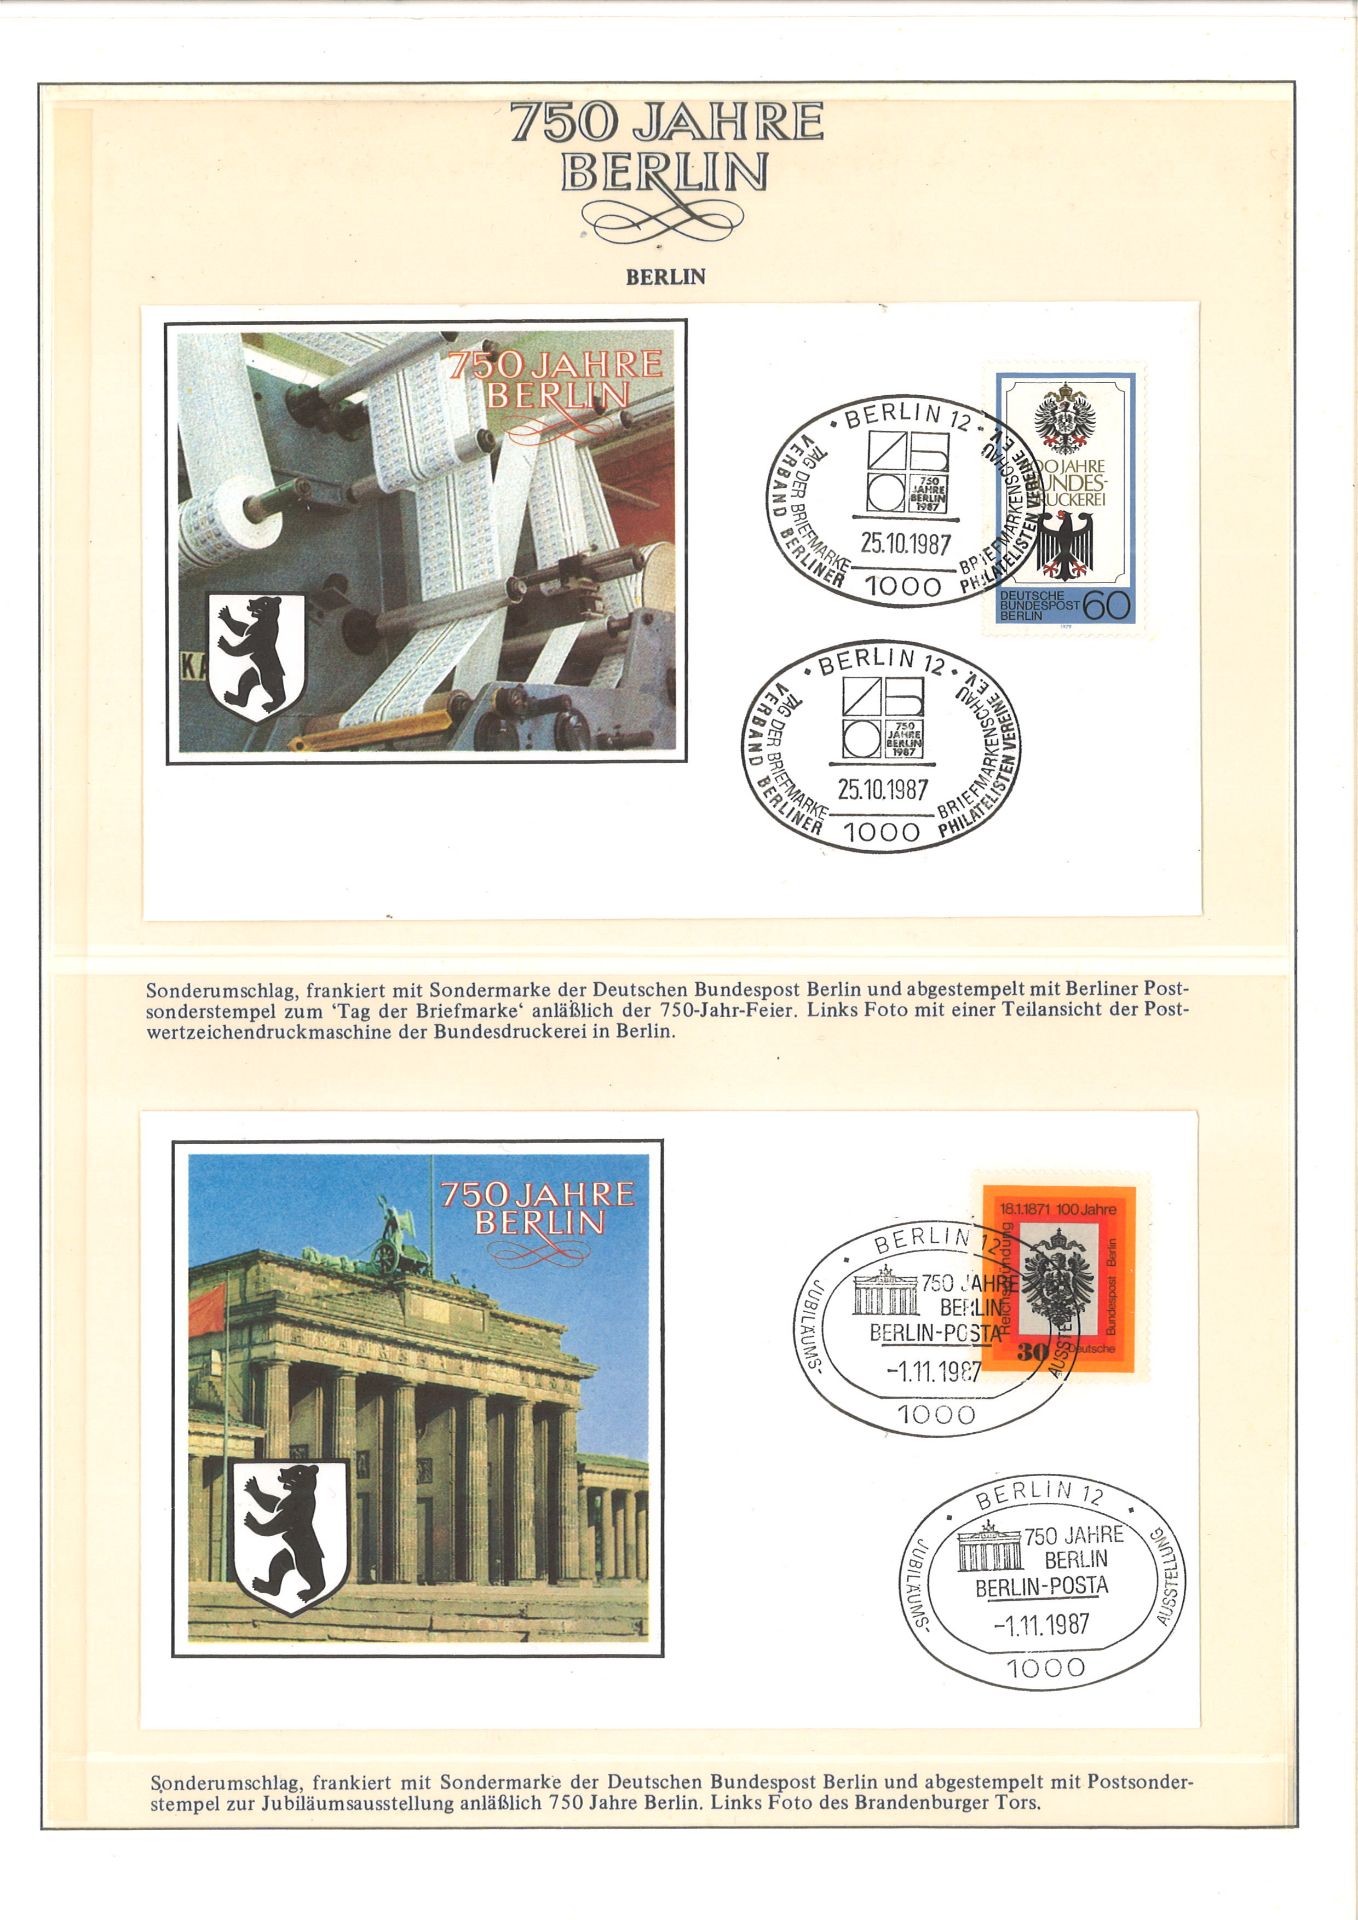 2 große Vordruckalben, 750 Jahre Berlin, enthalten überwiegend Belege und Briefmarken Berlin und